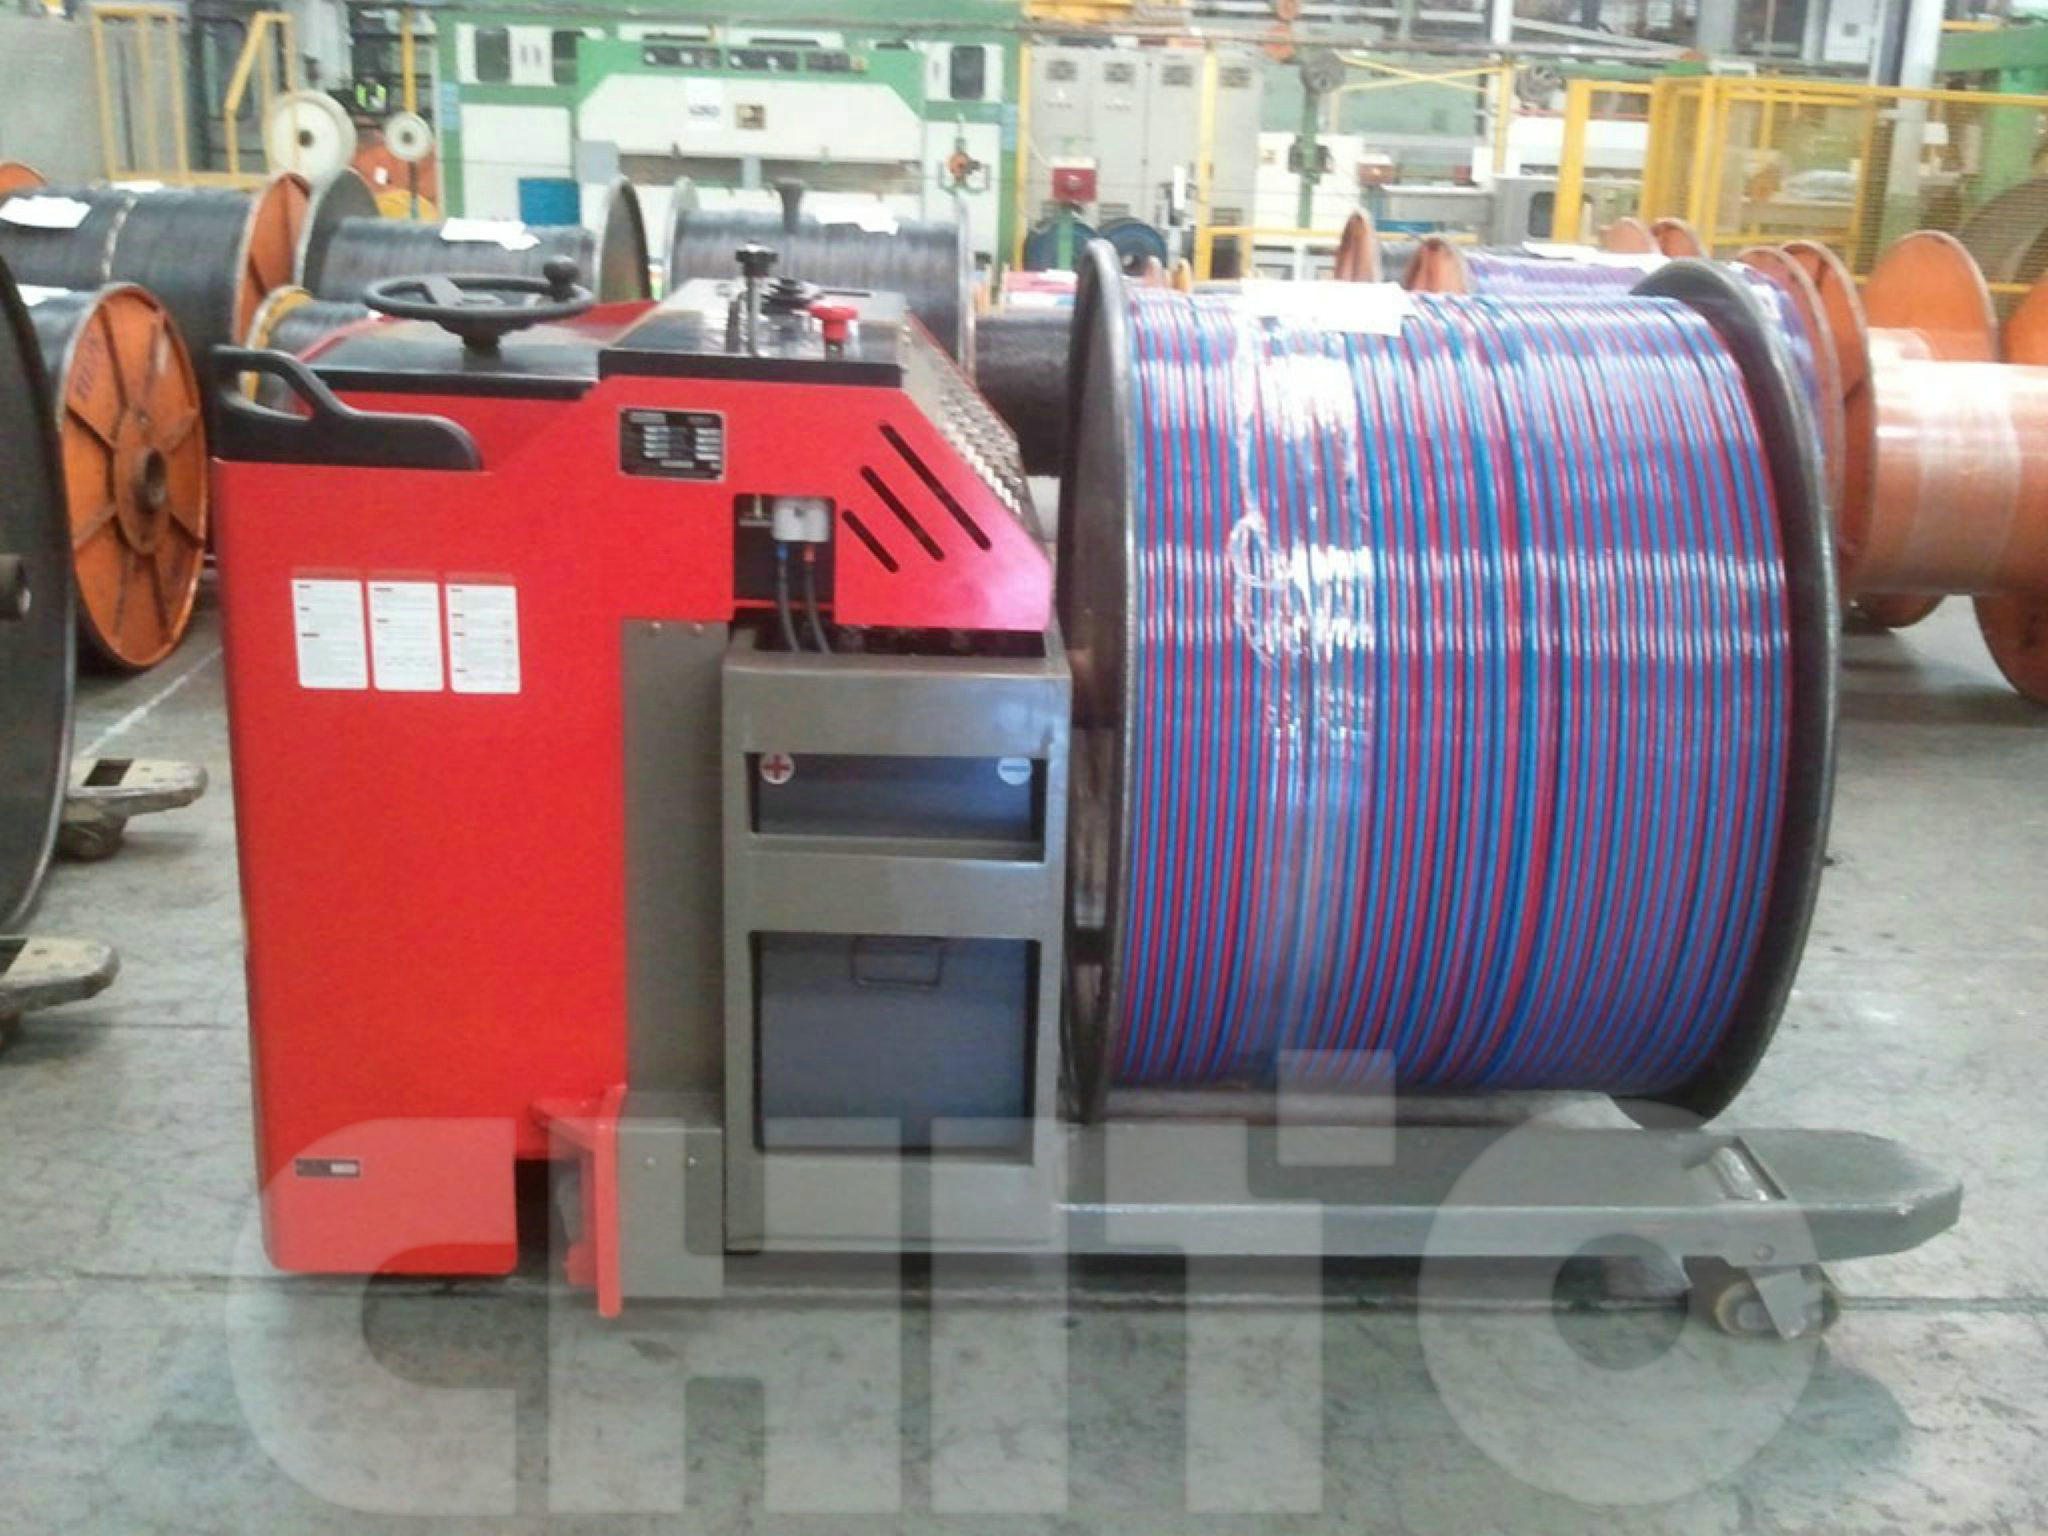 广州某大型电缆制造企业采购我司5吨电动搬运车